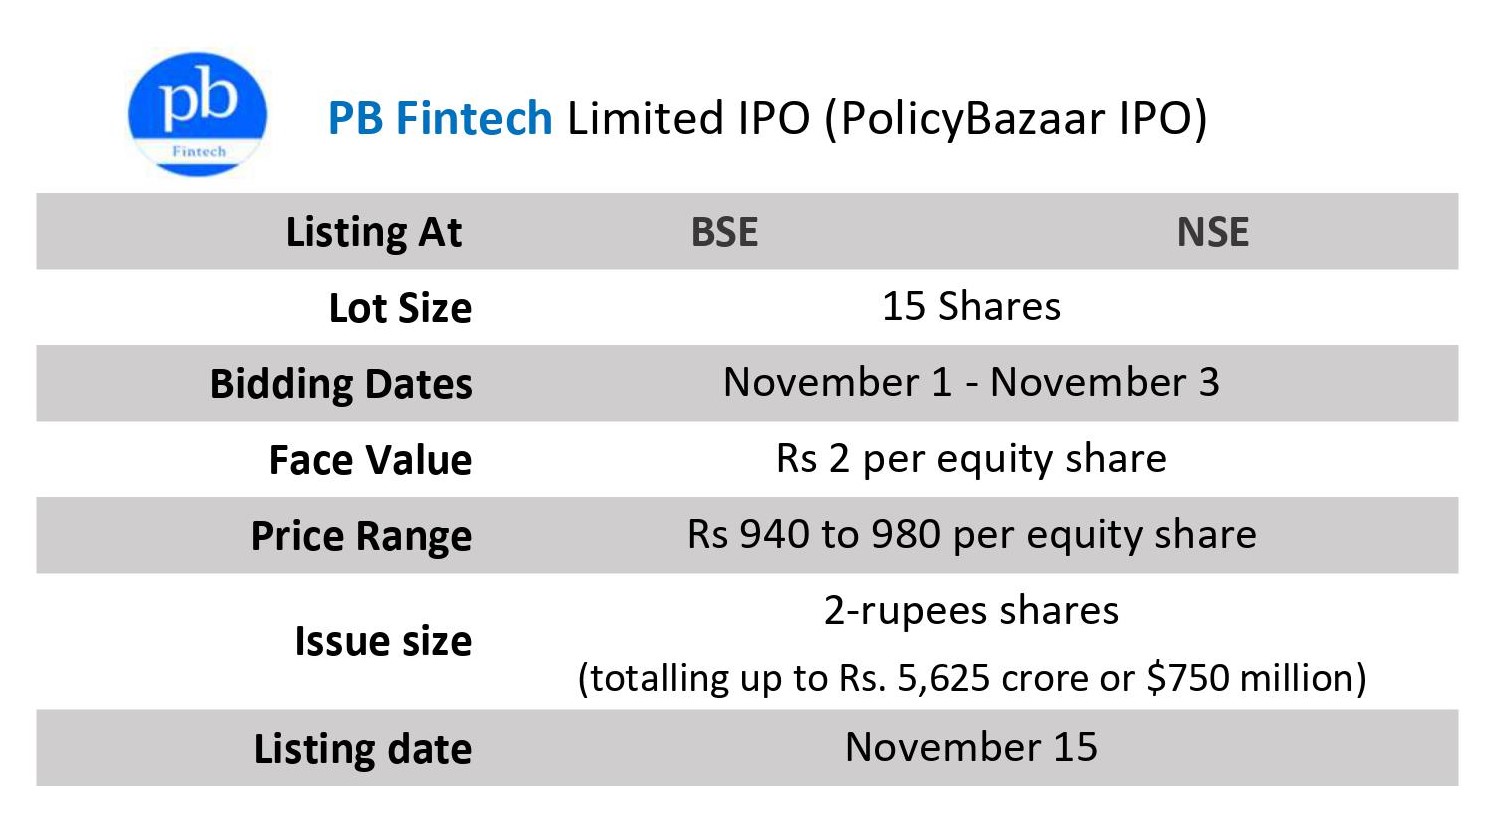 Policy Bazaar IPO details